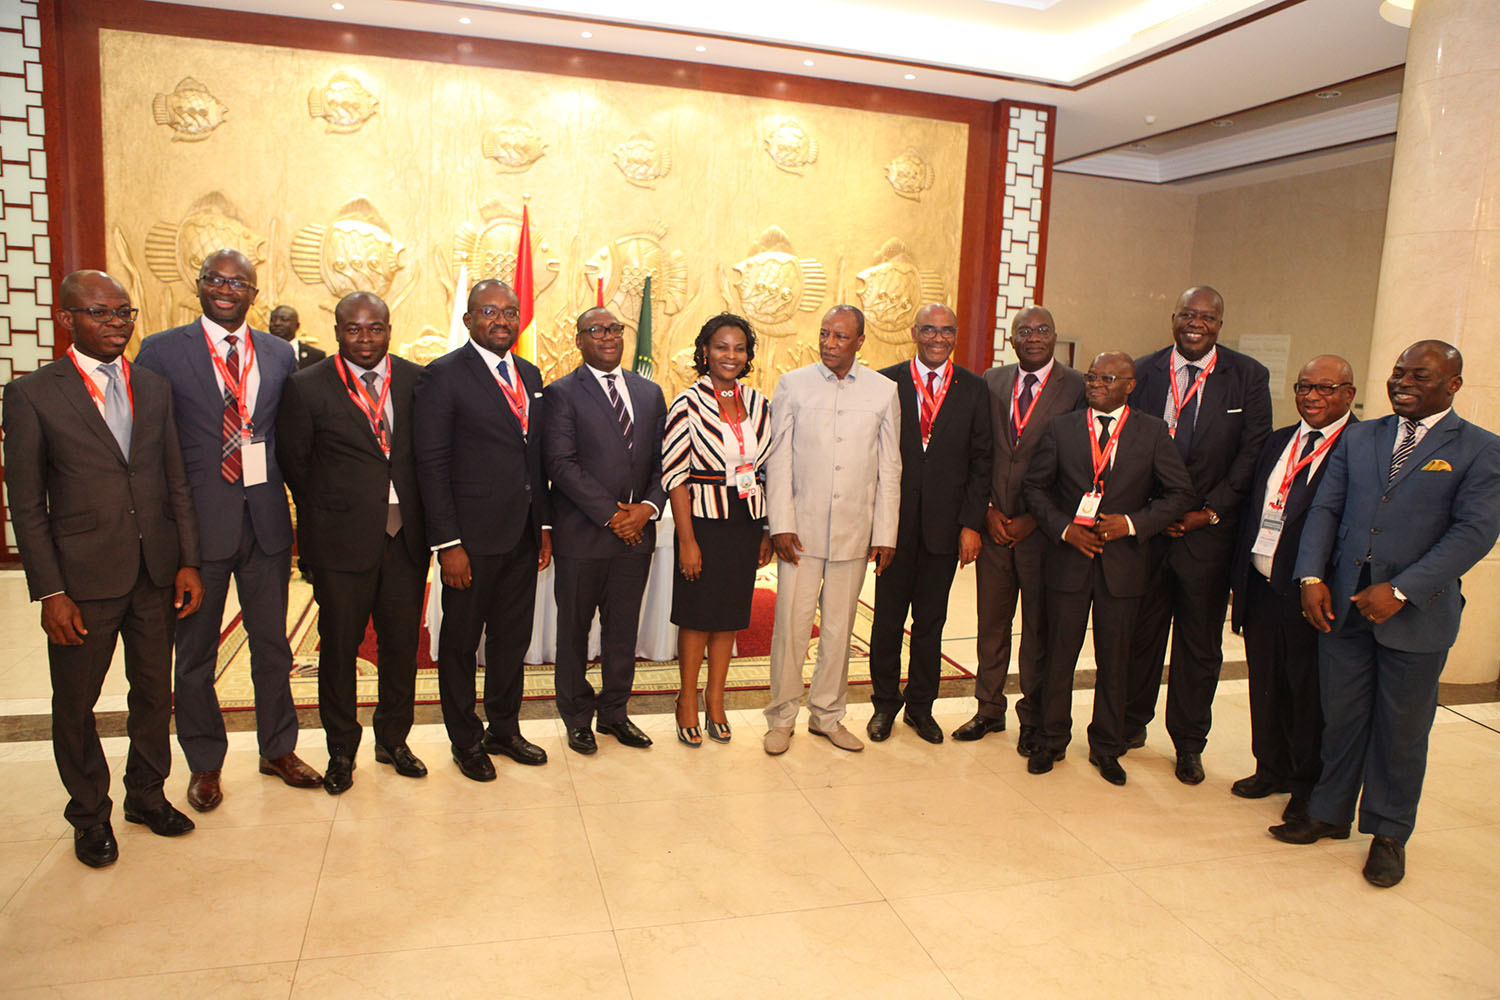 L’audience avec la délégation officielle du patronat ivoirien : le président Alpha CONDE met les hommes d’affaires ivoiriens en mission